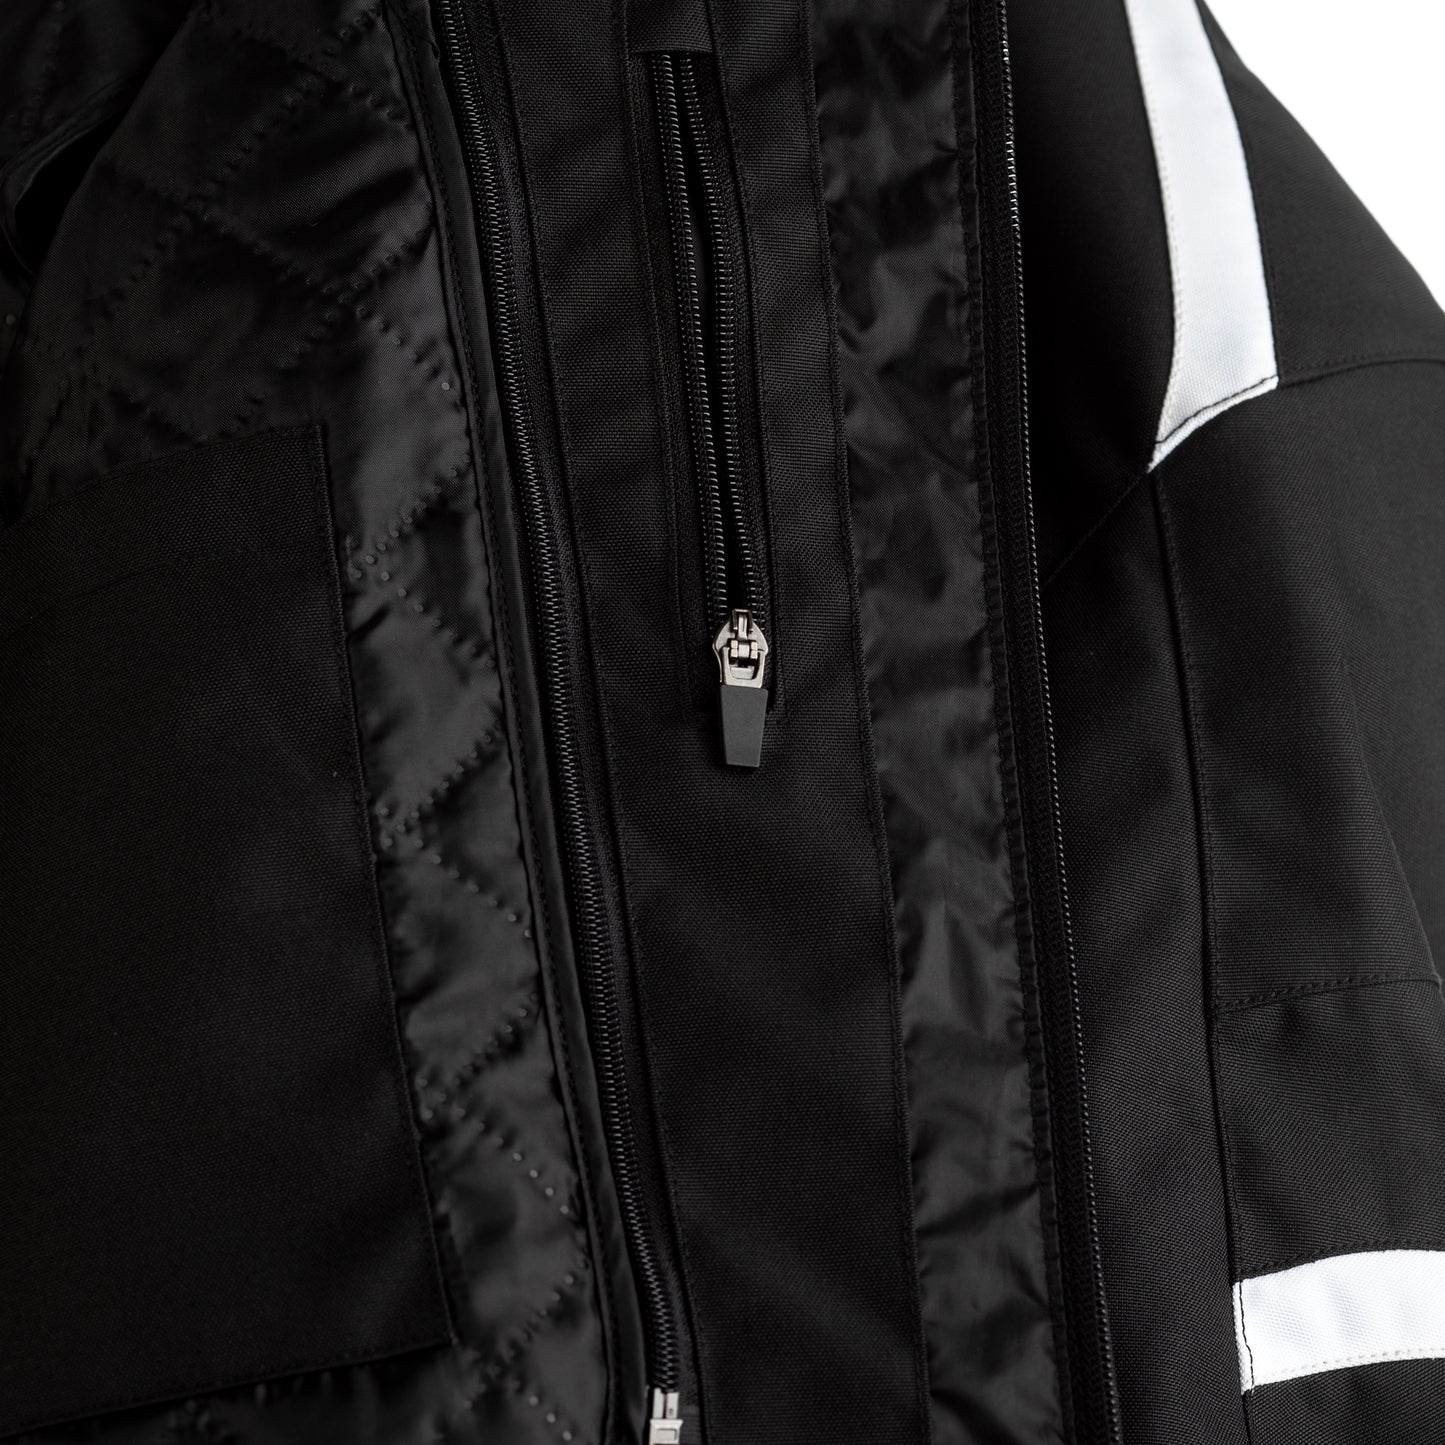 RST Pilot CE Men's Waterproof Textile Jacket - Black / White (2368)